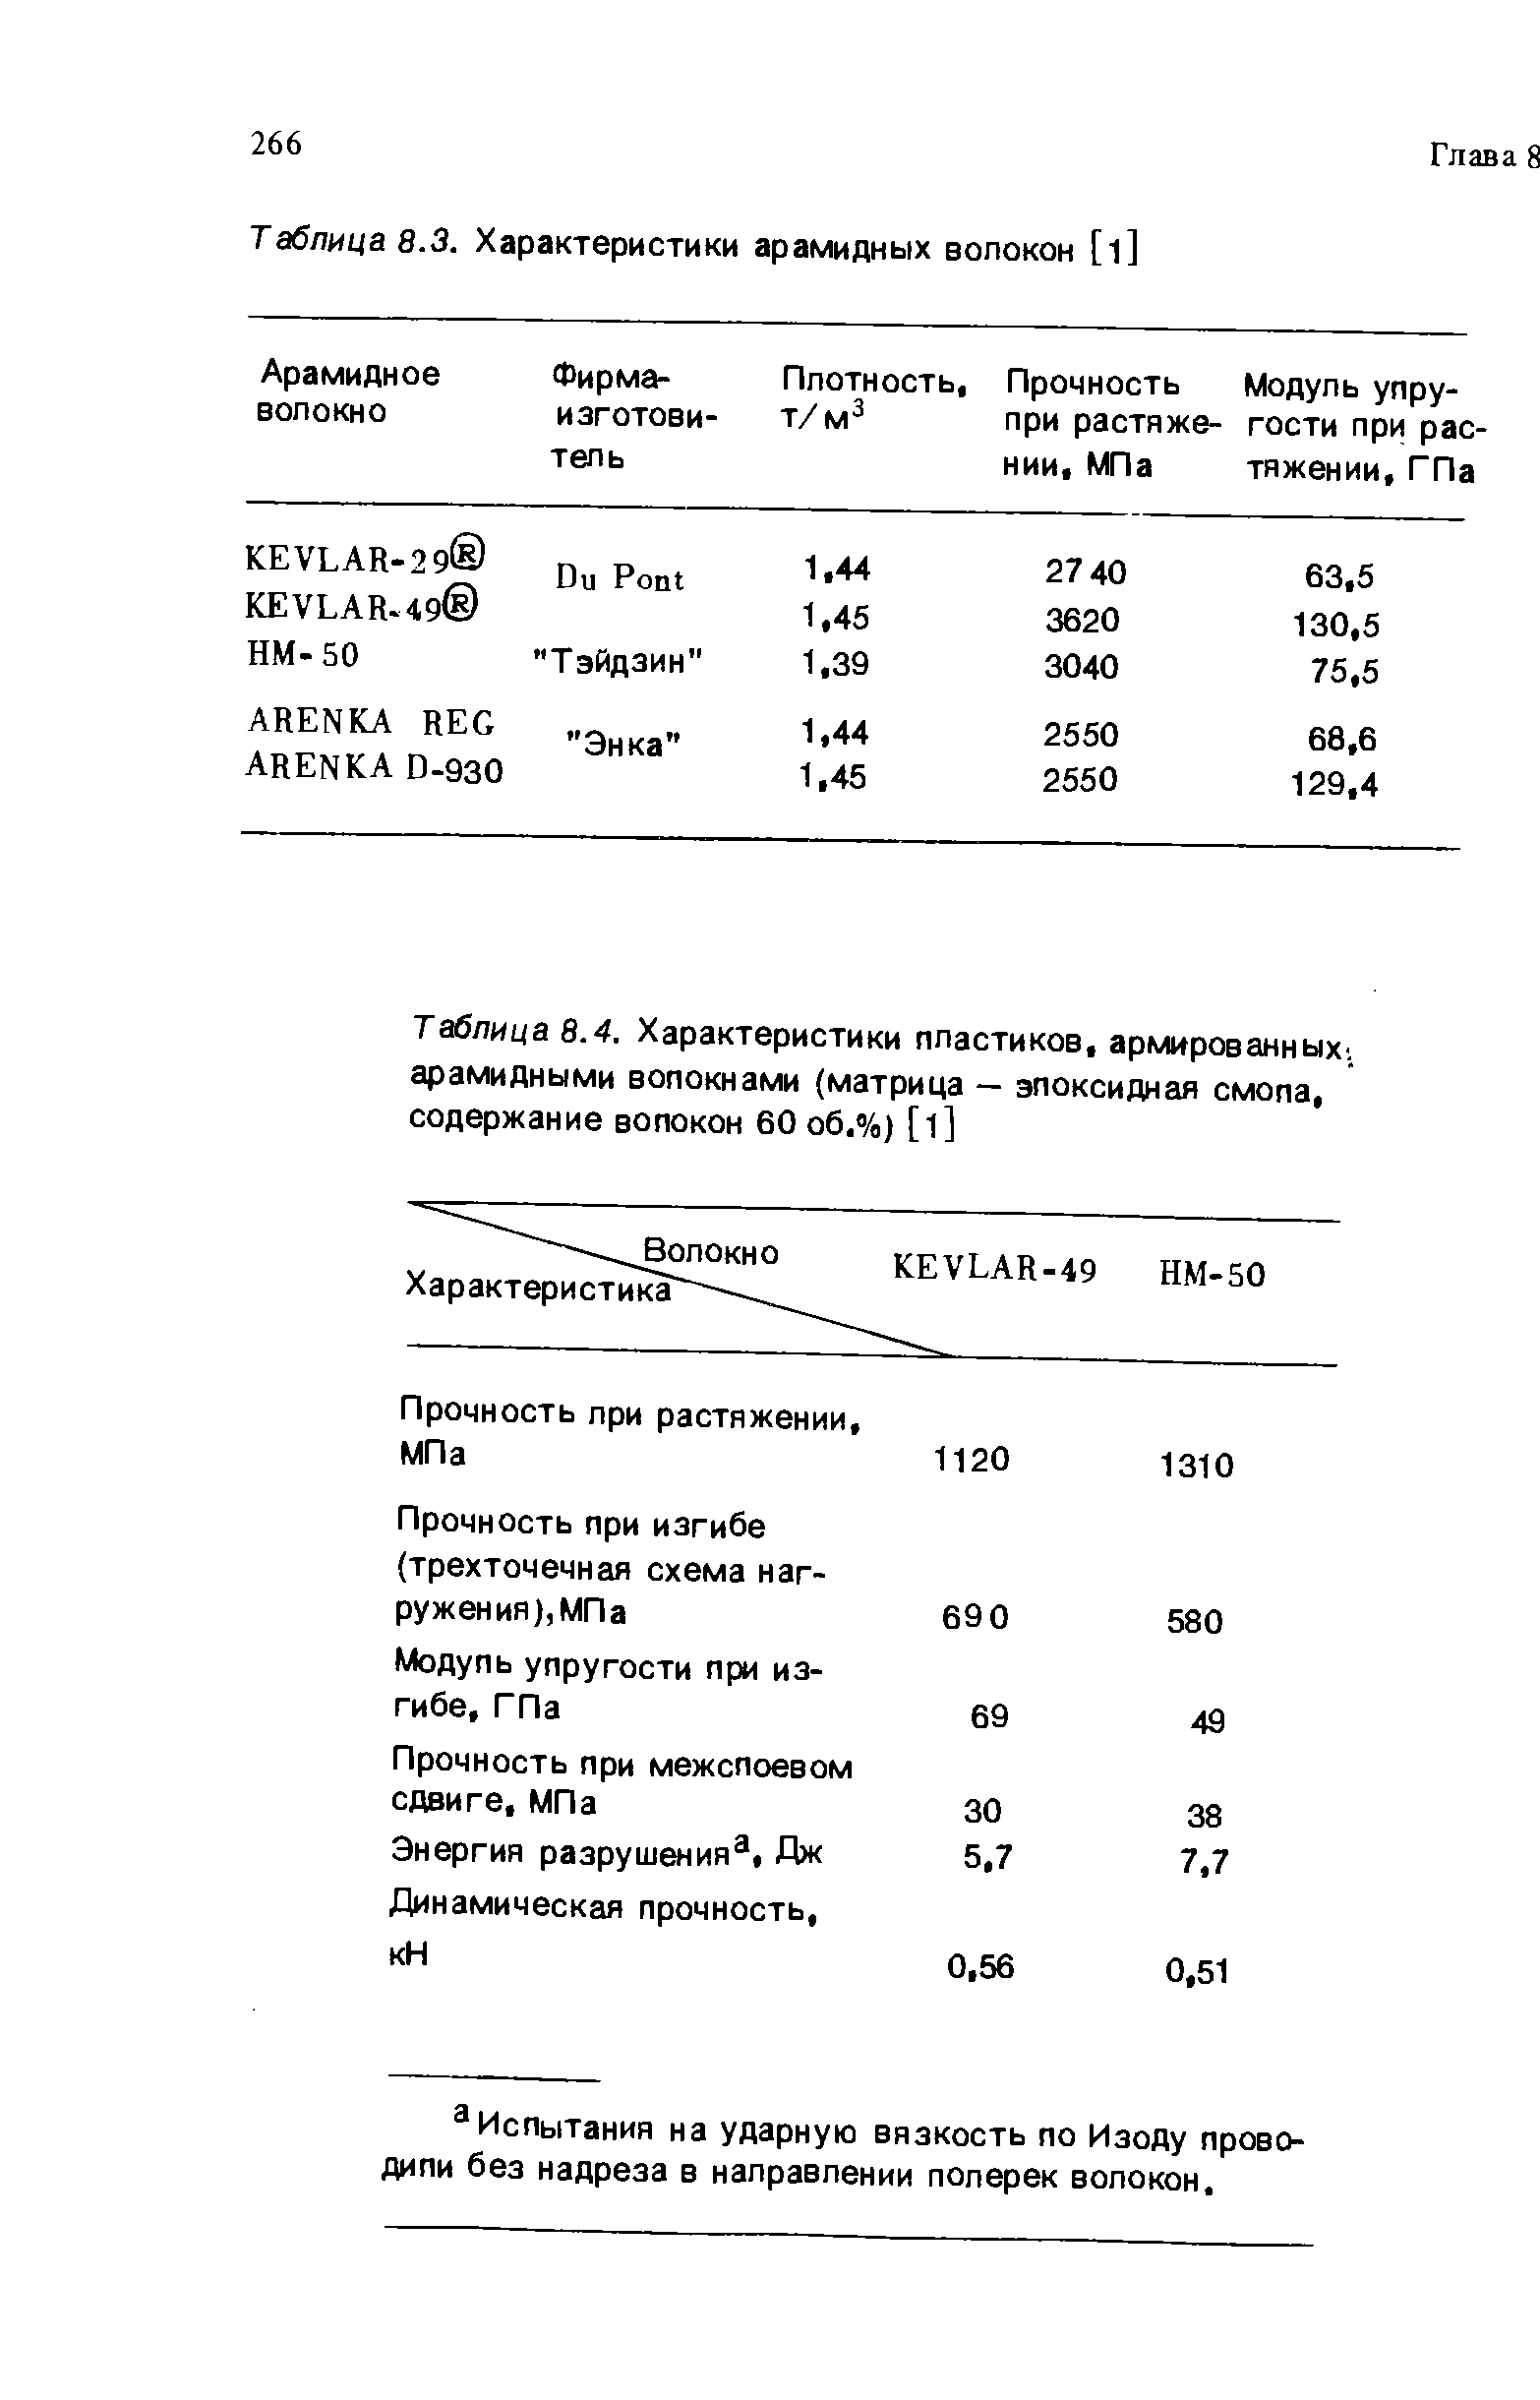 Таблица 8.4. Характеристики пластиков, армированных арамидными волокнами (матрица — эпоксидная смопа, содержание вопокон 60 об,%) [l]
